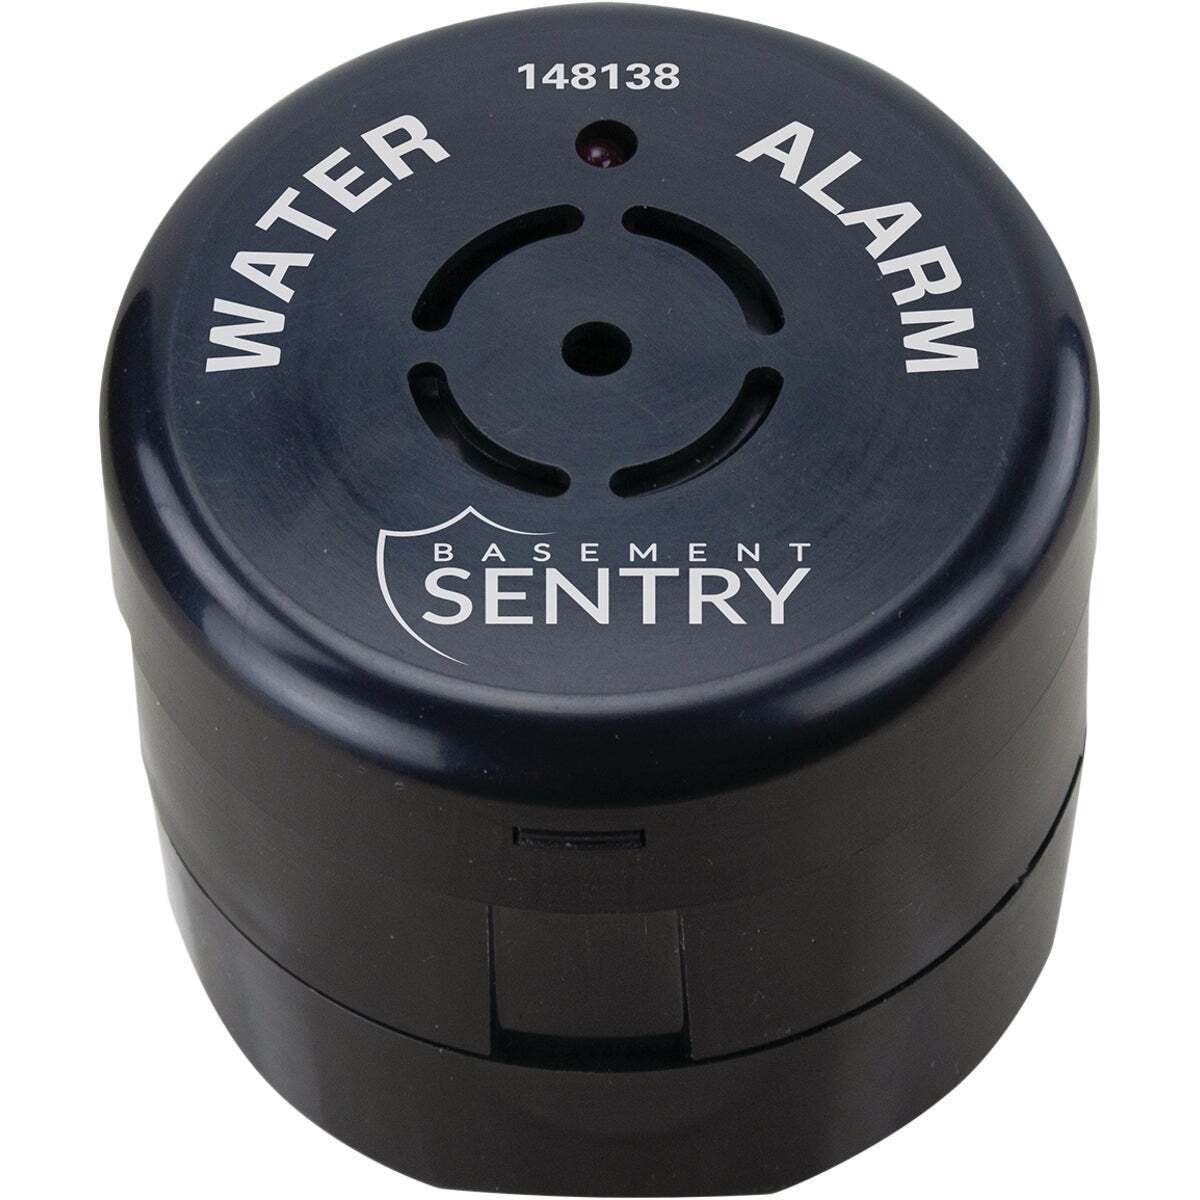 Basement Sentry Dual Purpose Water Alarm 148138 Basement Sentry 148138